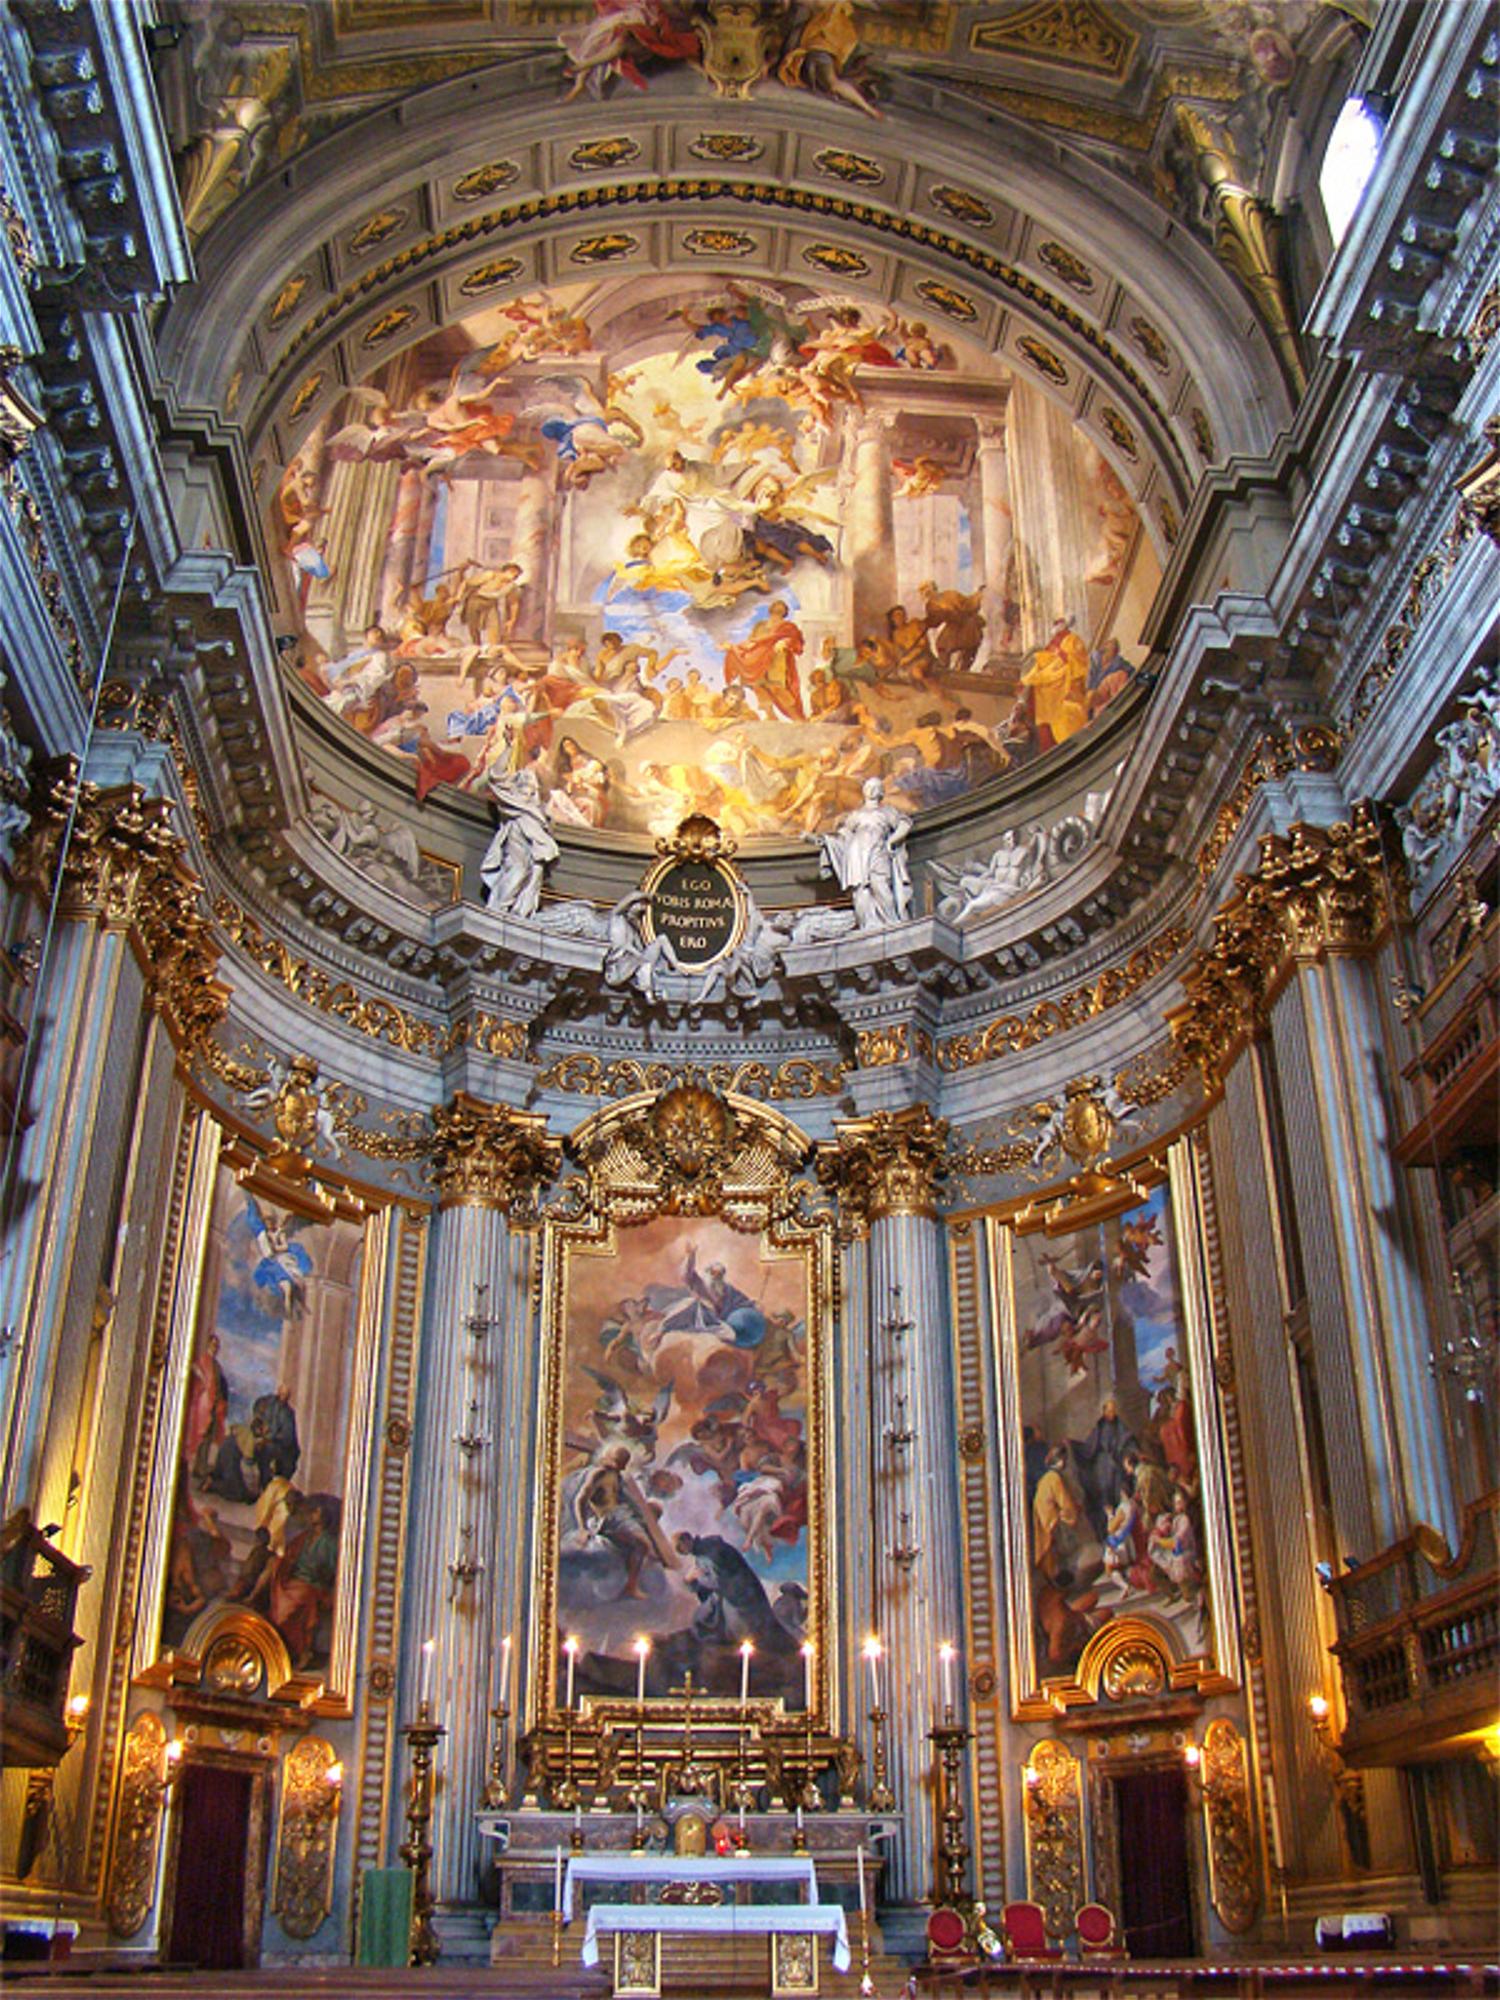 Baroque Church interior